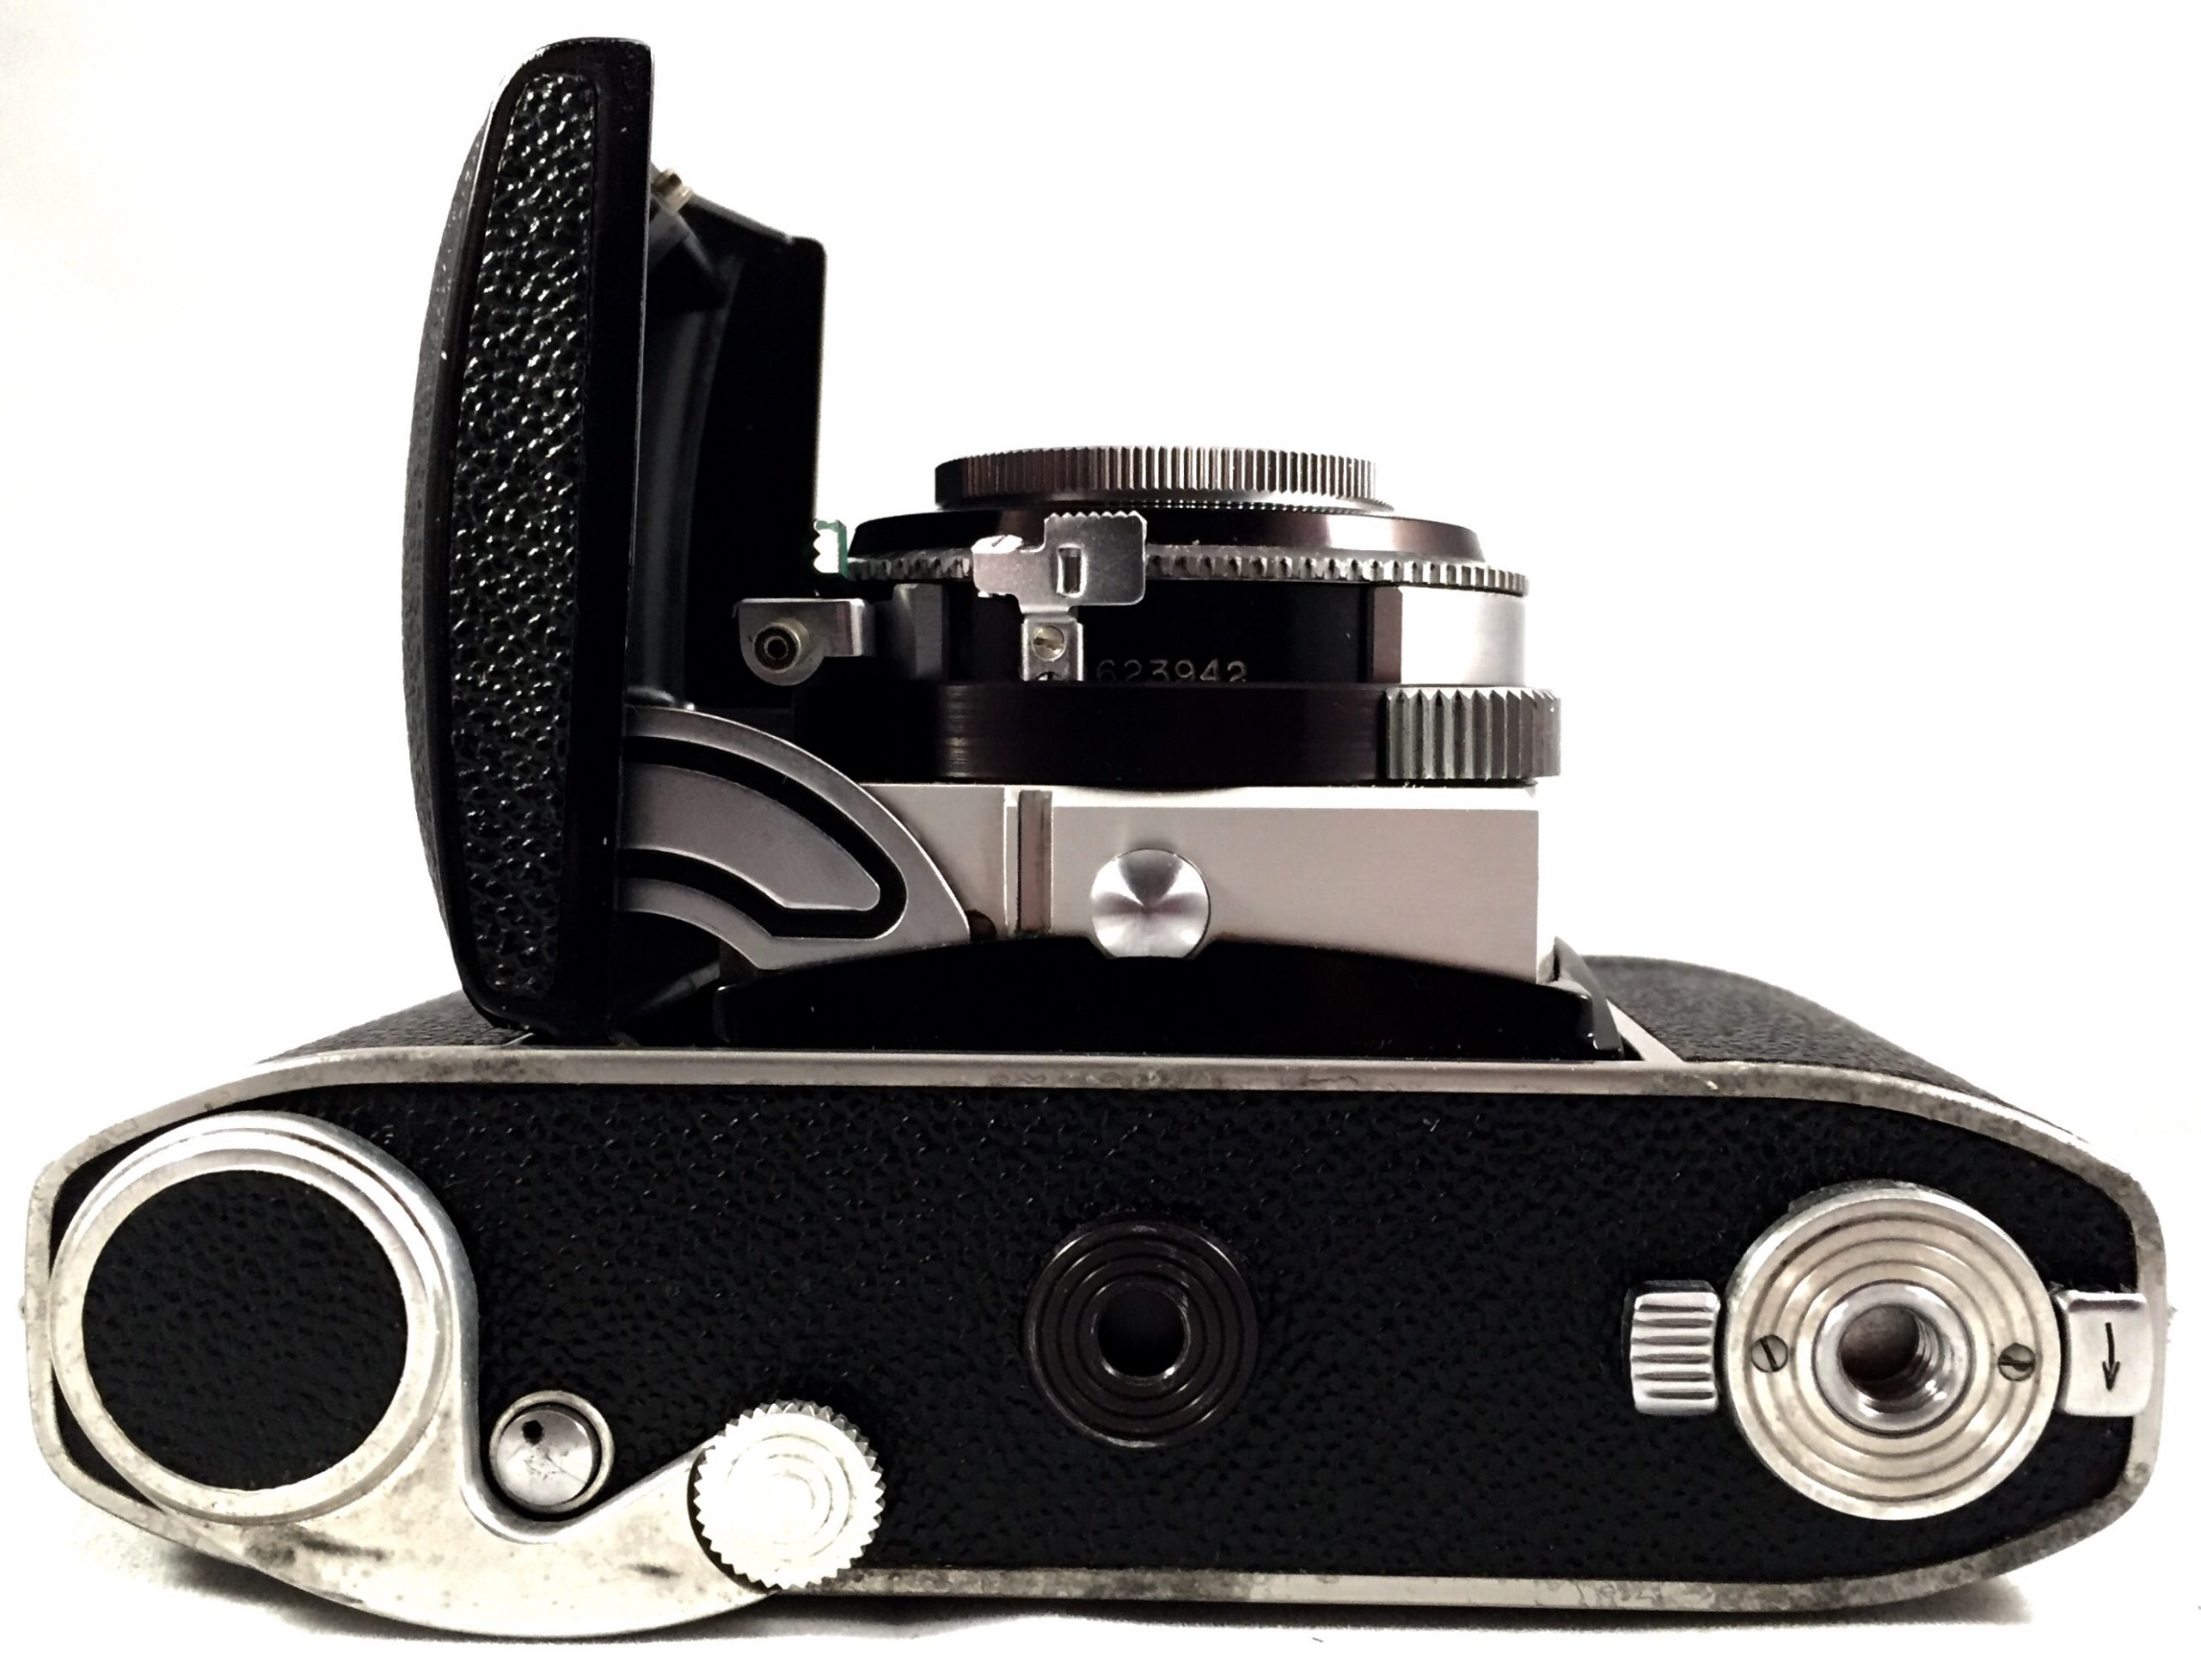 Kodak Retina 1b type 018